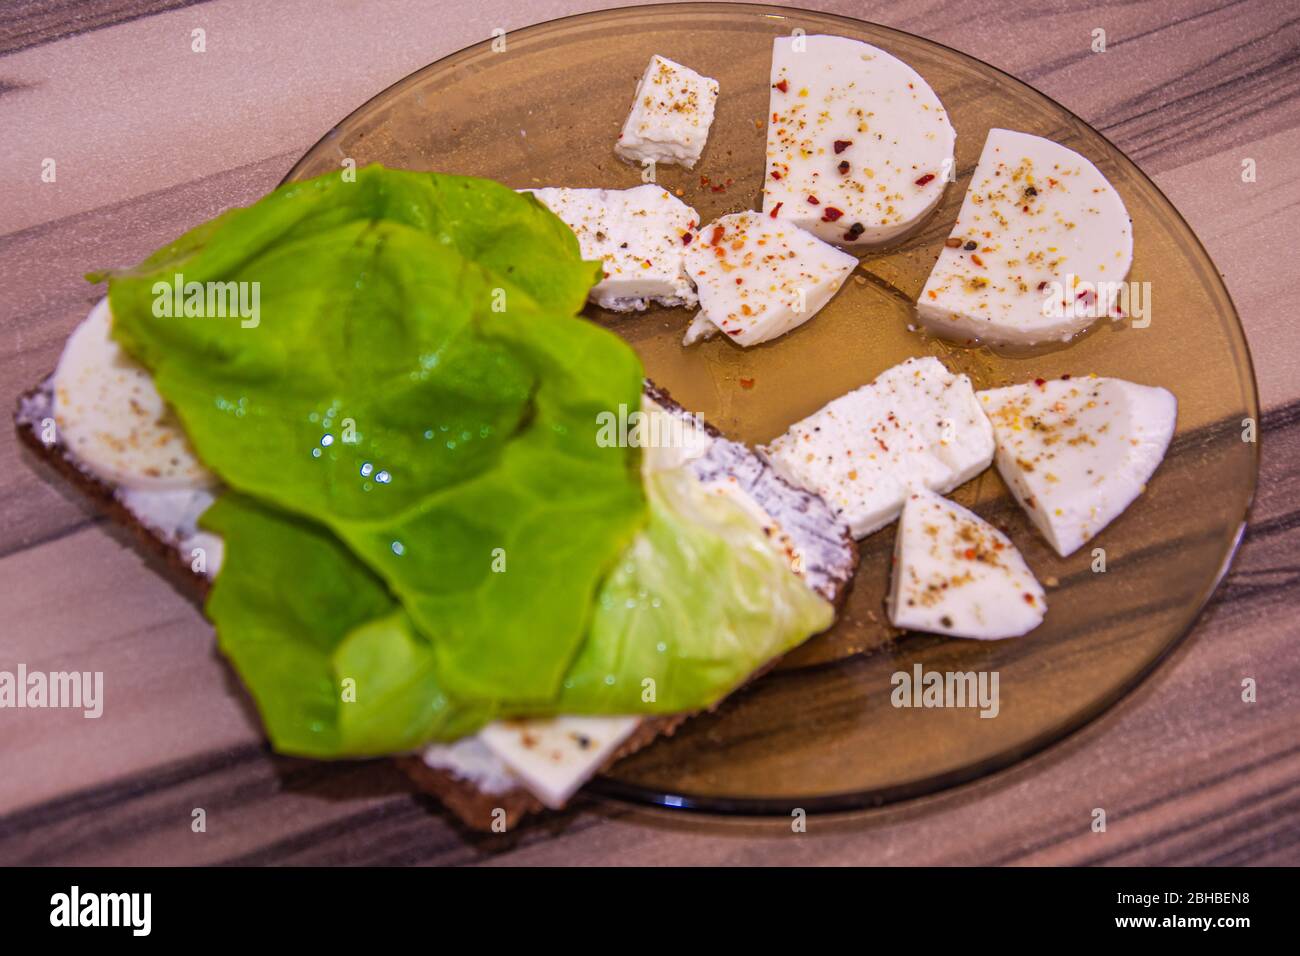 Plaque de verre avec fromage blanc aromatisé et laitue verte Banque D'Images